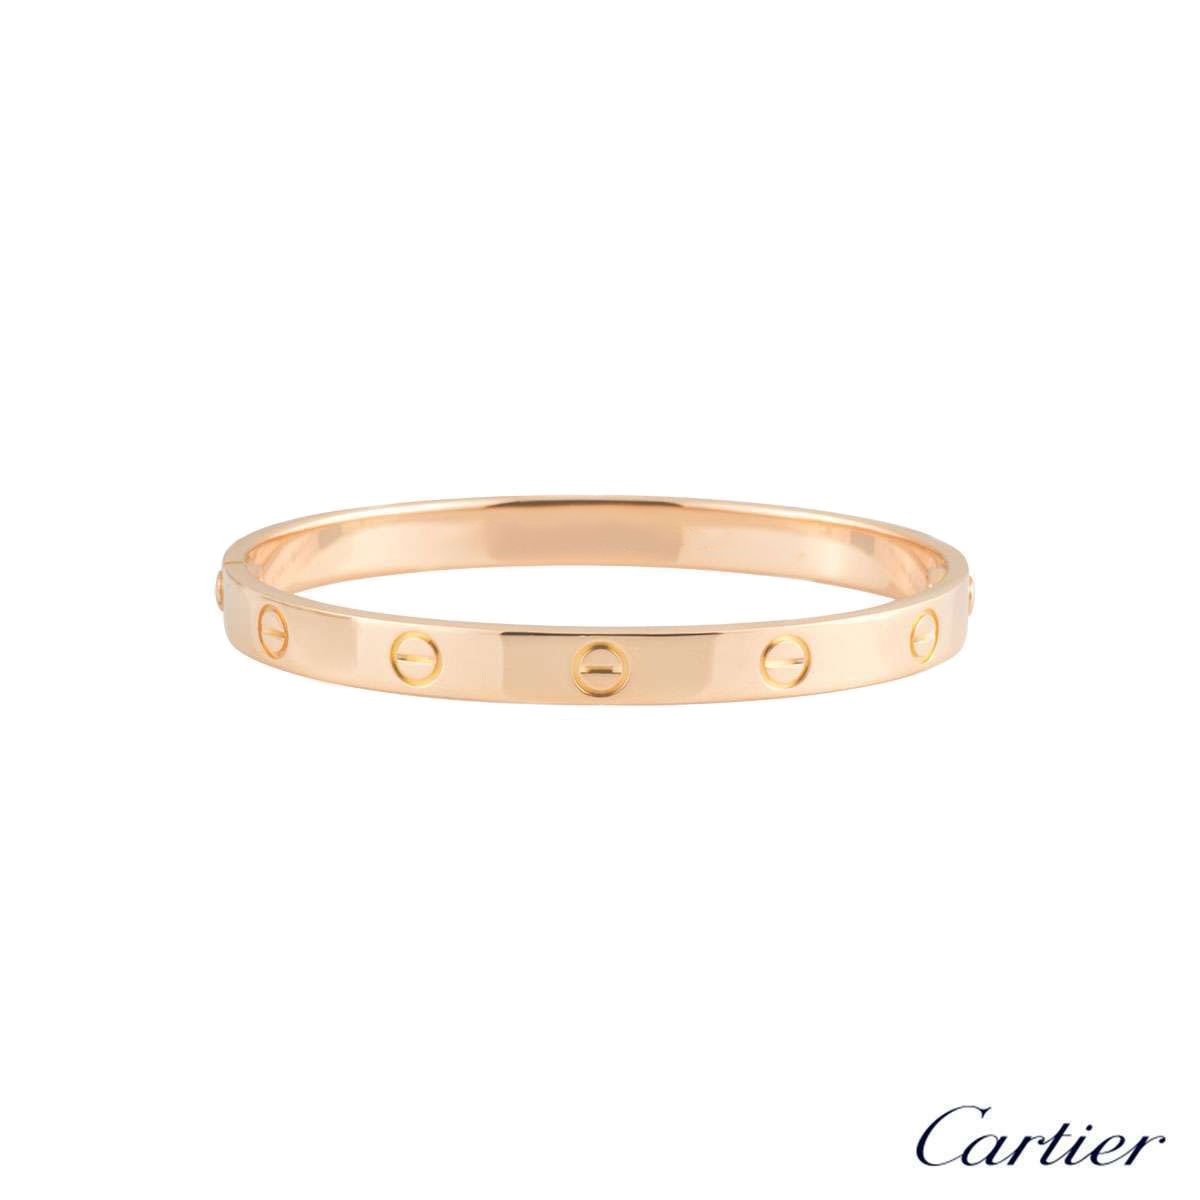 LOVE# bracelet - Bracelets | Cartier UAE